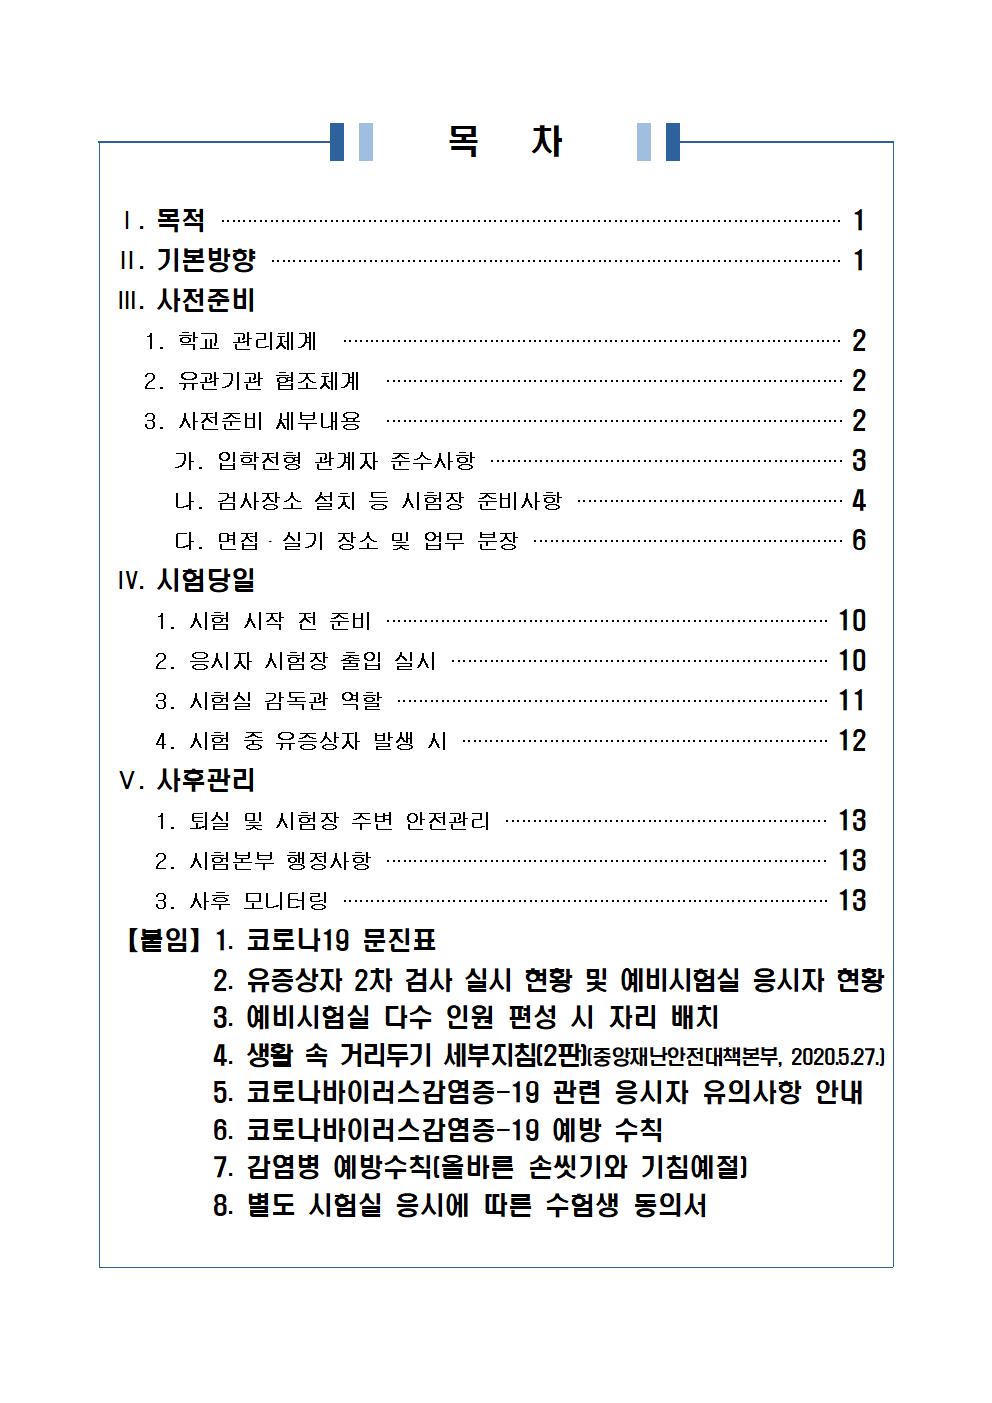 2021학년도 학교별 입학전형 안전관리 계획_한국게임과학고(홈페이지게시)002